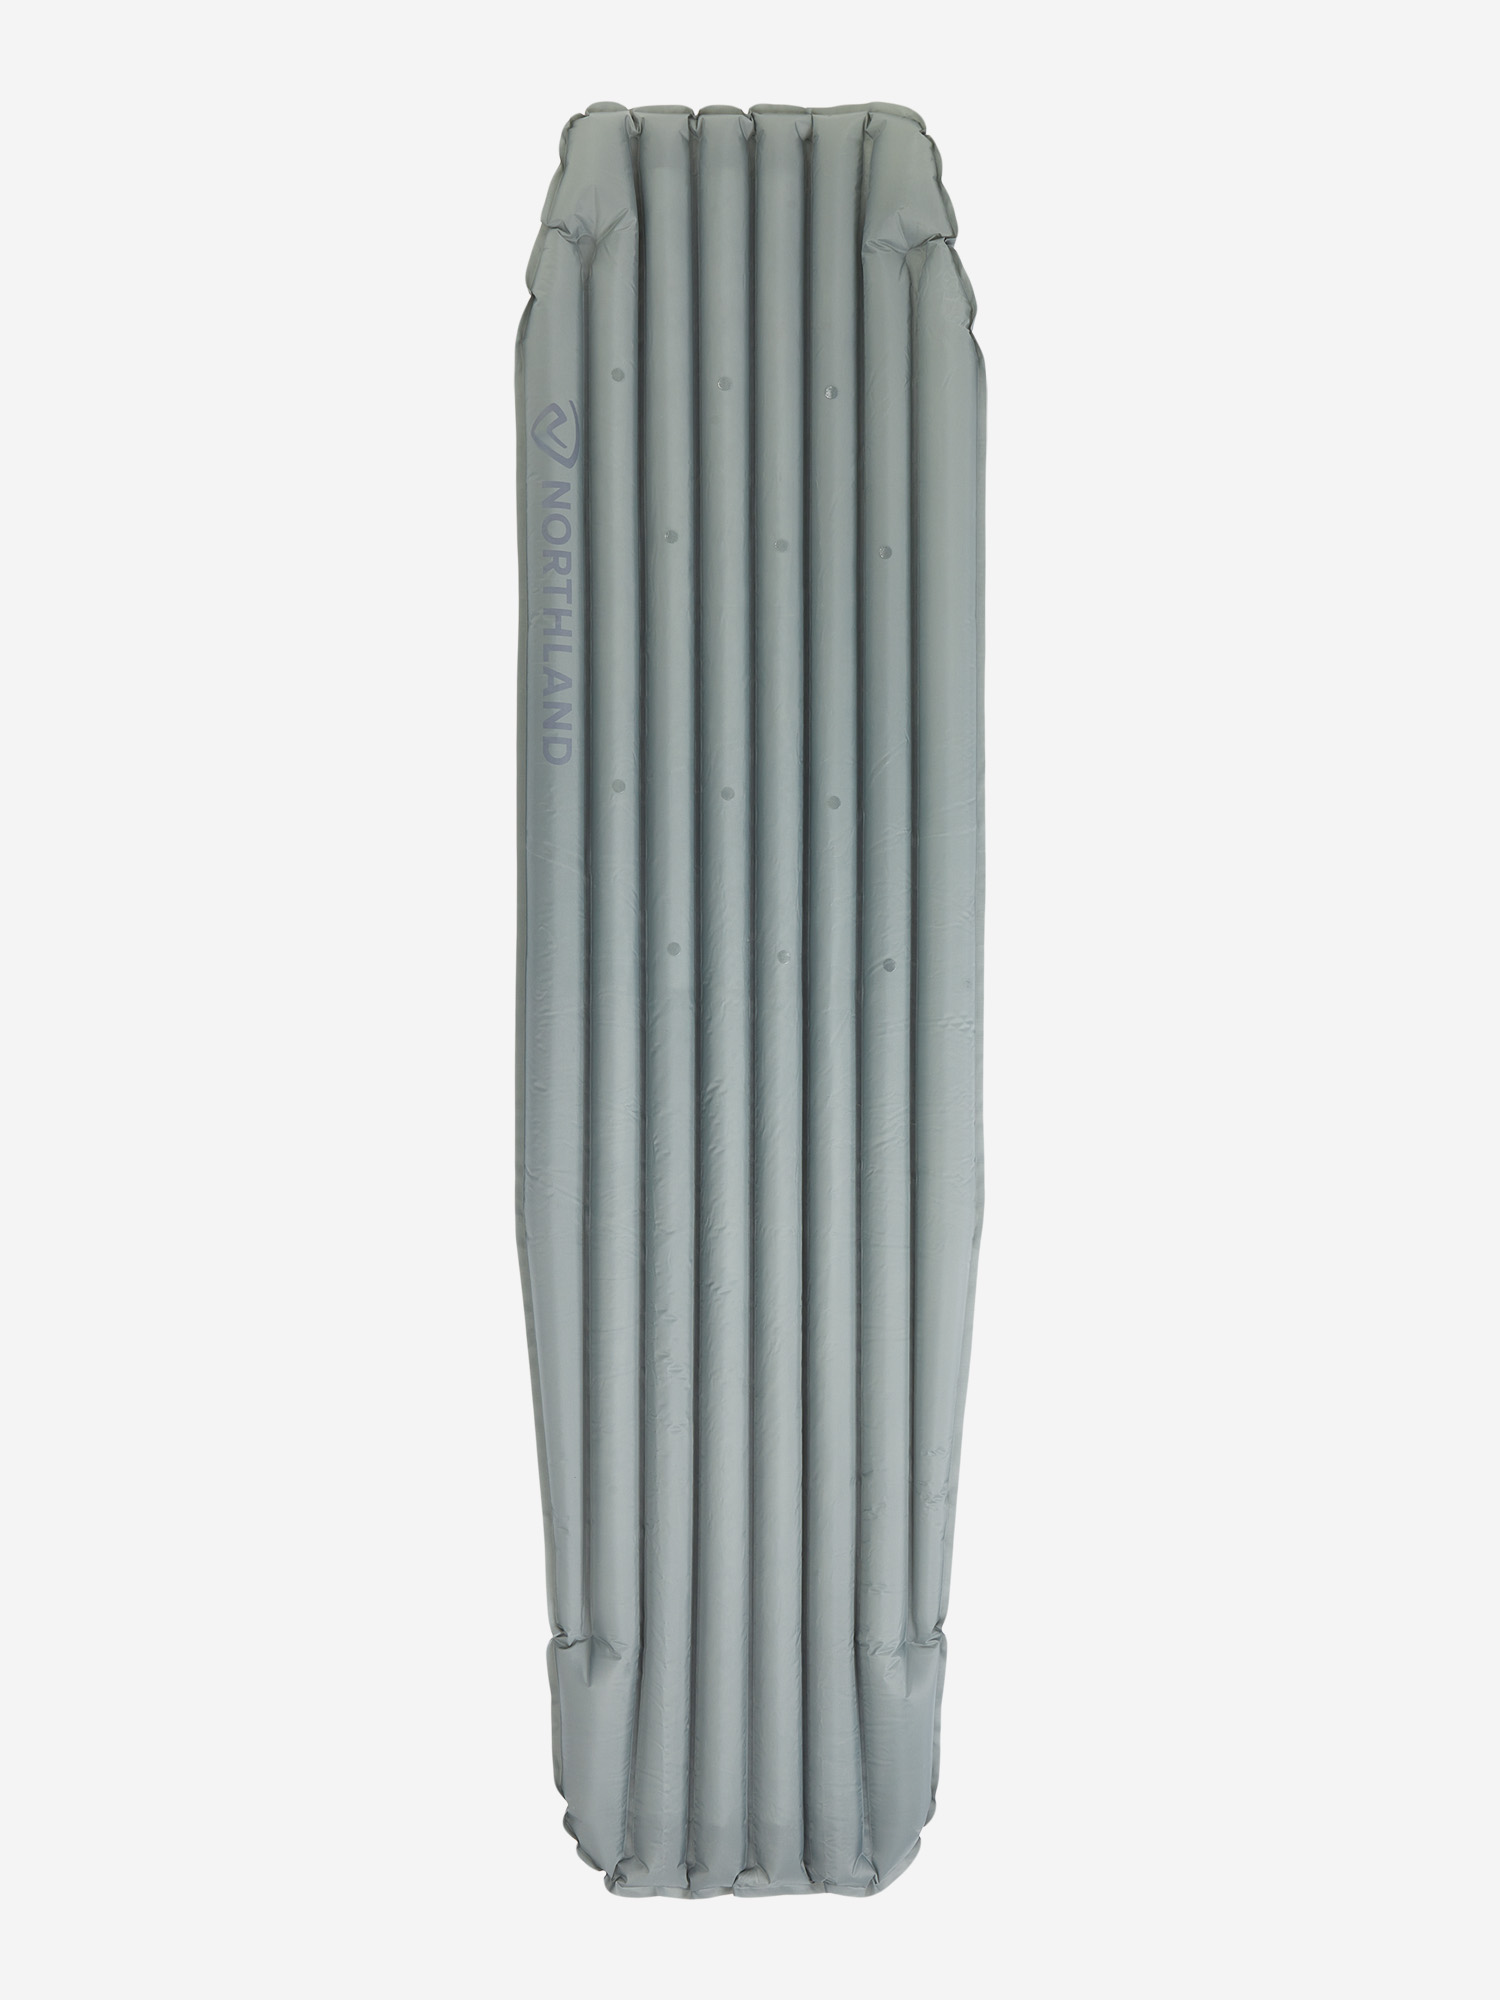 Коврик надувной Northland, 180 см, Серый коврик в багажник lexus rx350 2003 2009 кросс полиуретан серый